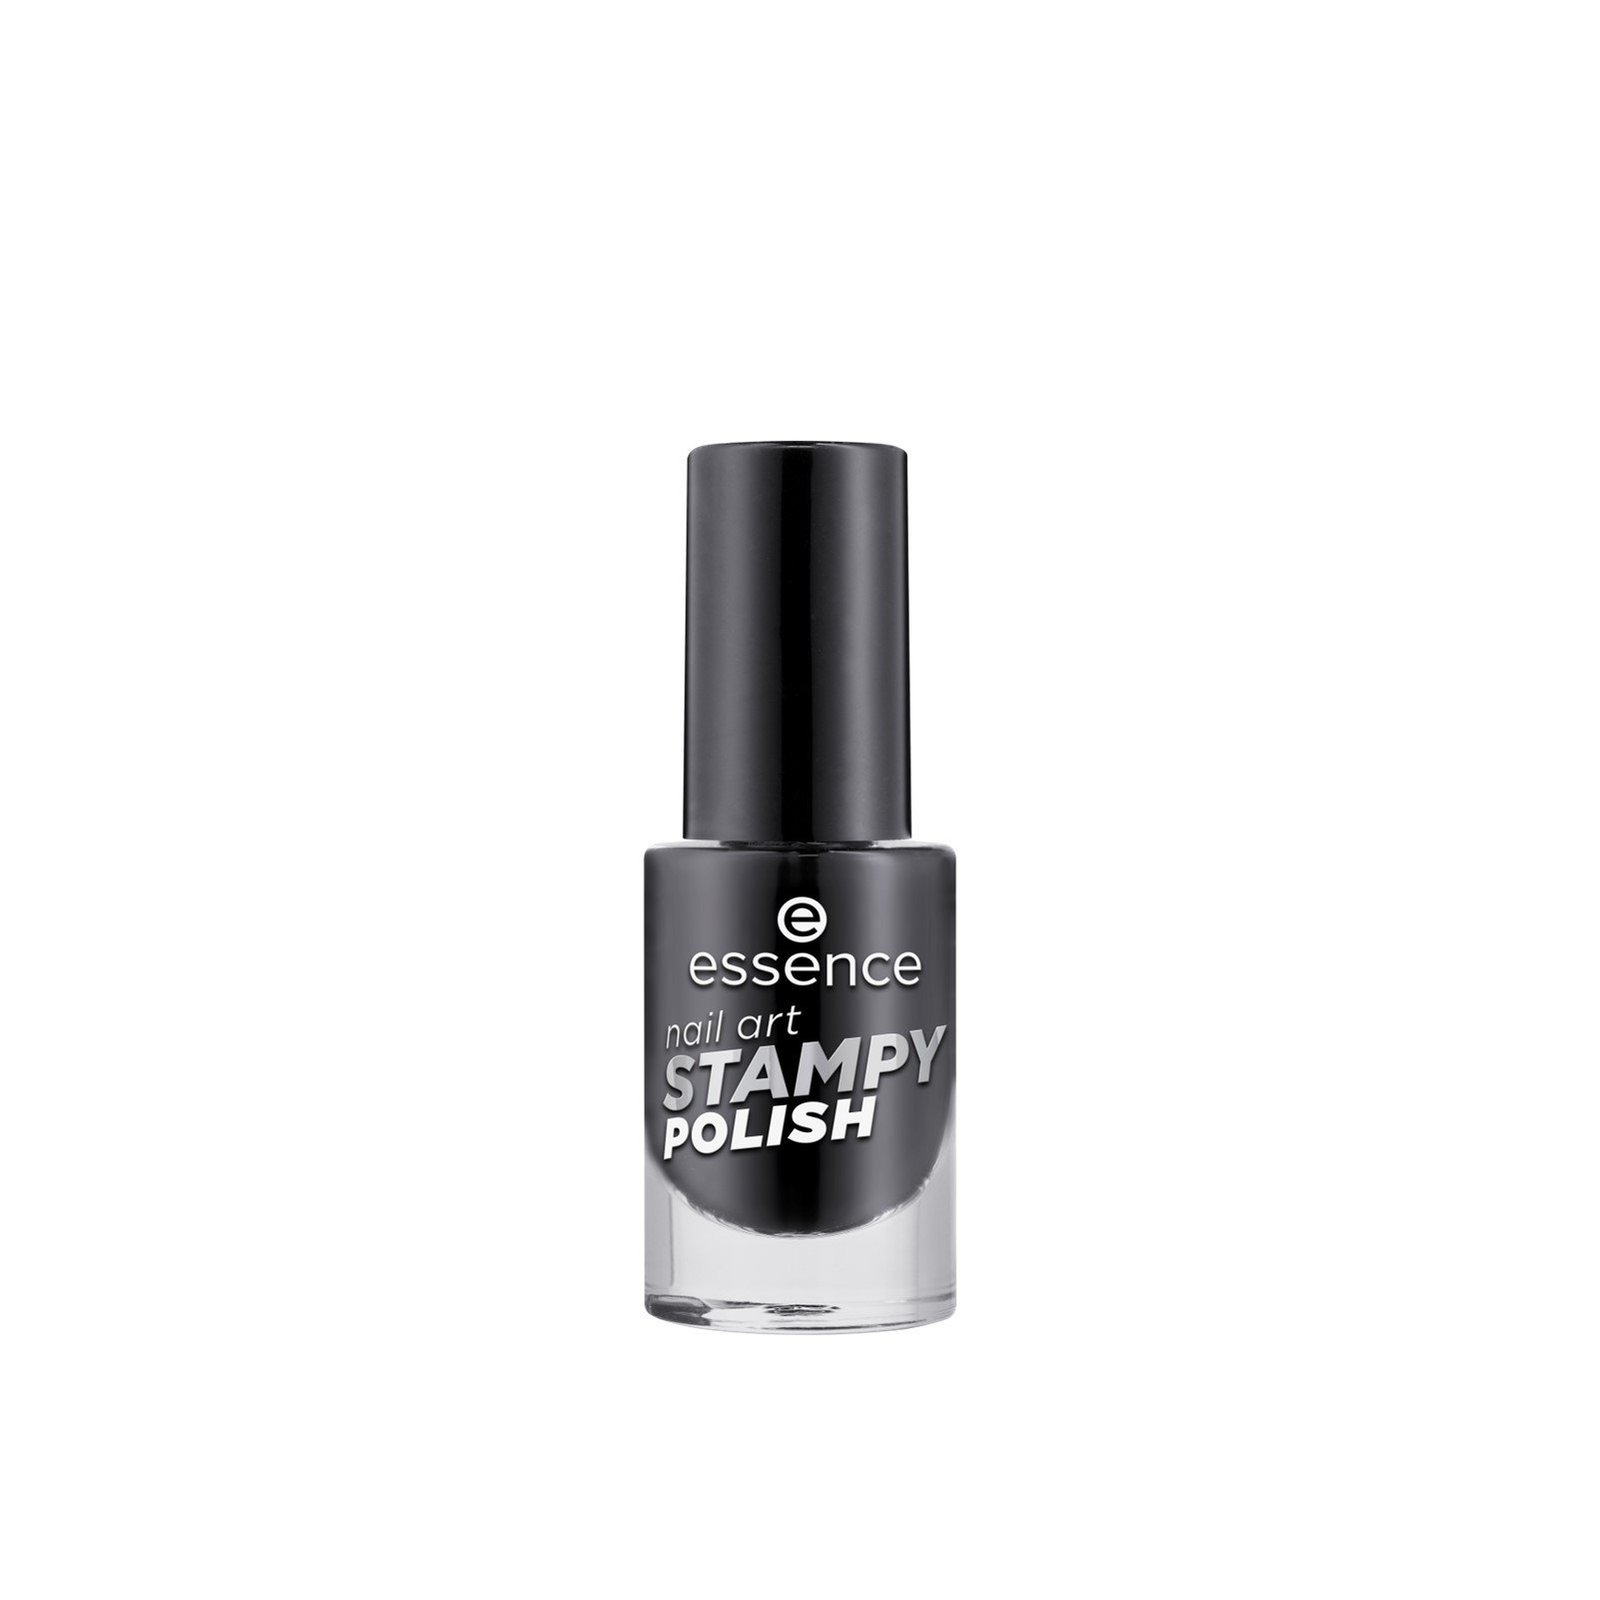 essence Nail Art Stampy Polish 01 Perfect Match 5ml